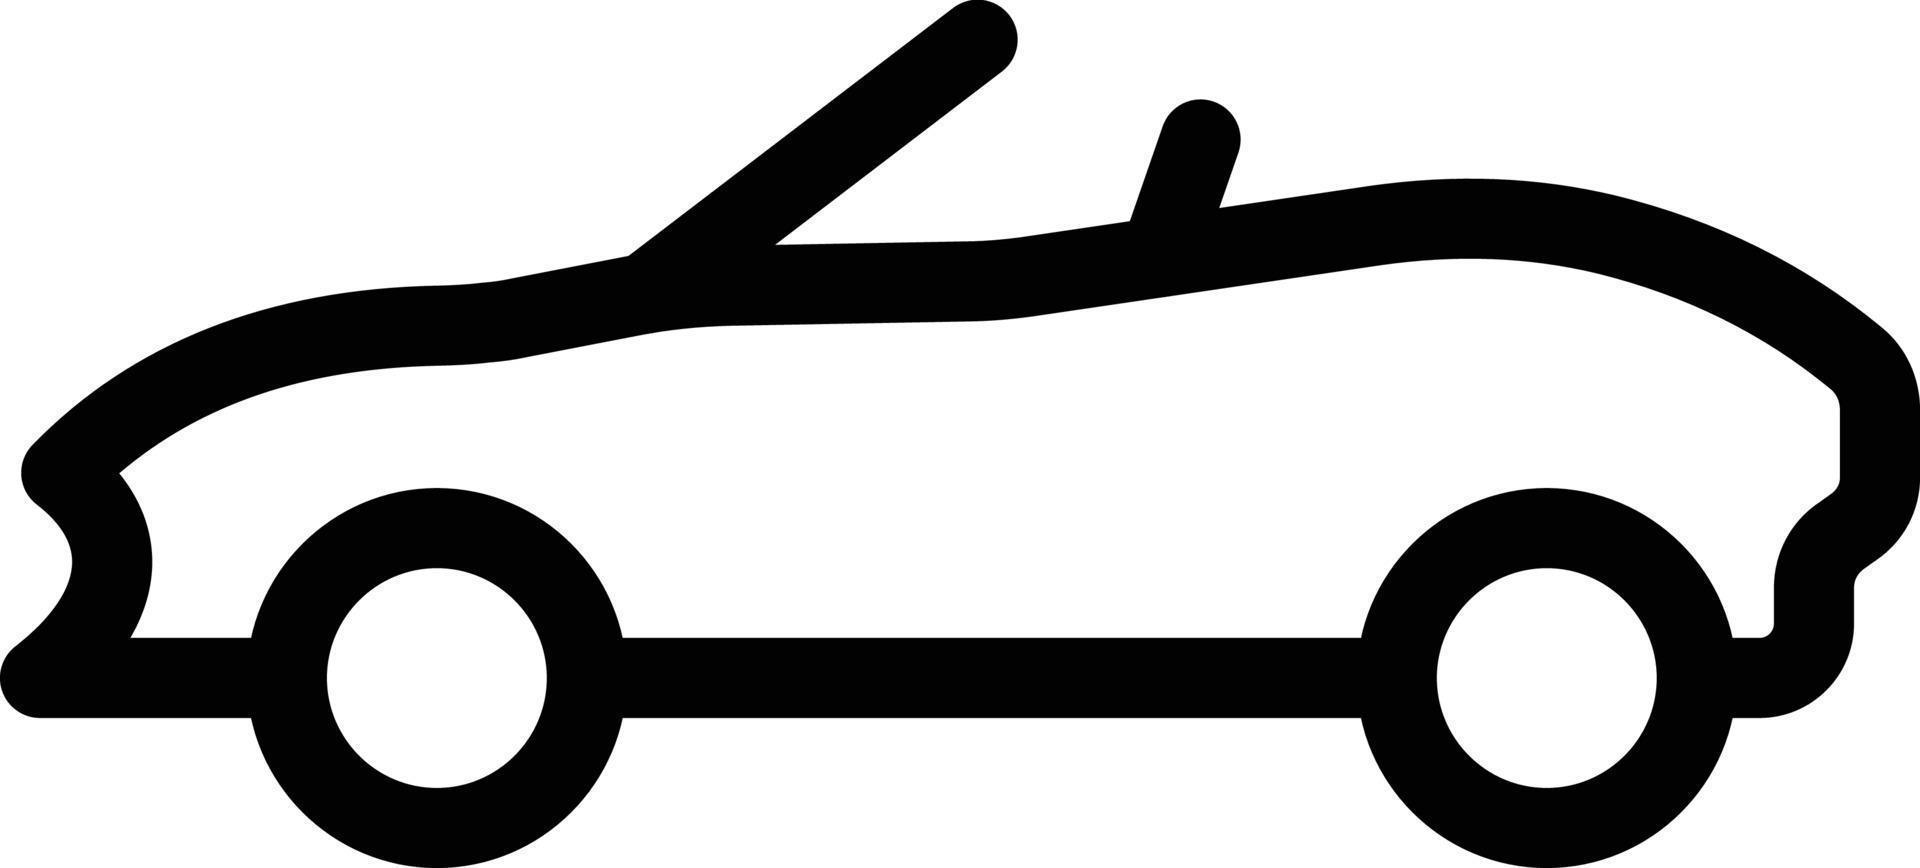 ilustração em vetor cabrio em um ícones de symbols.vector de qualidade background.premium para conceito e design gráfico.